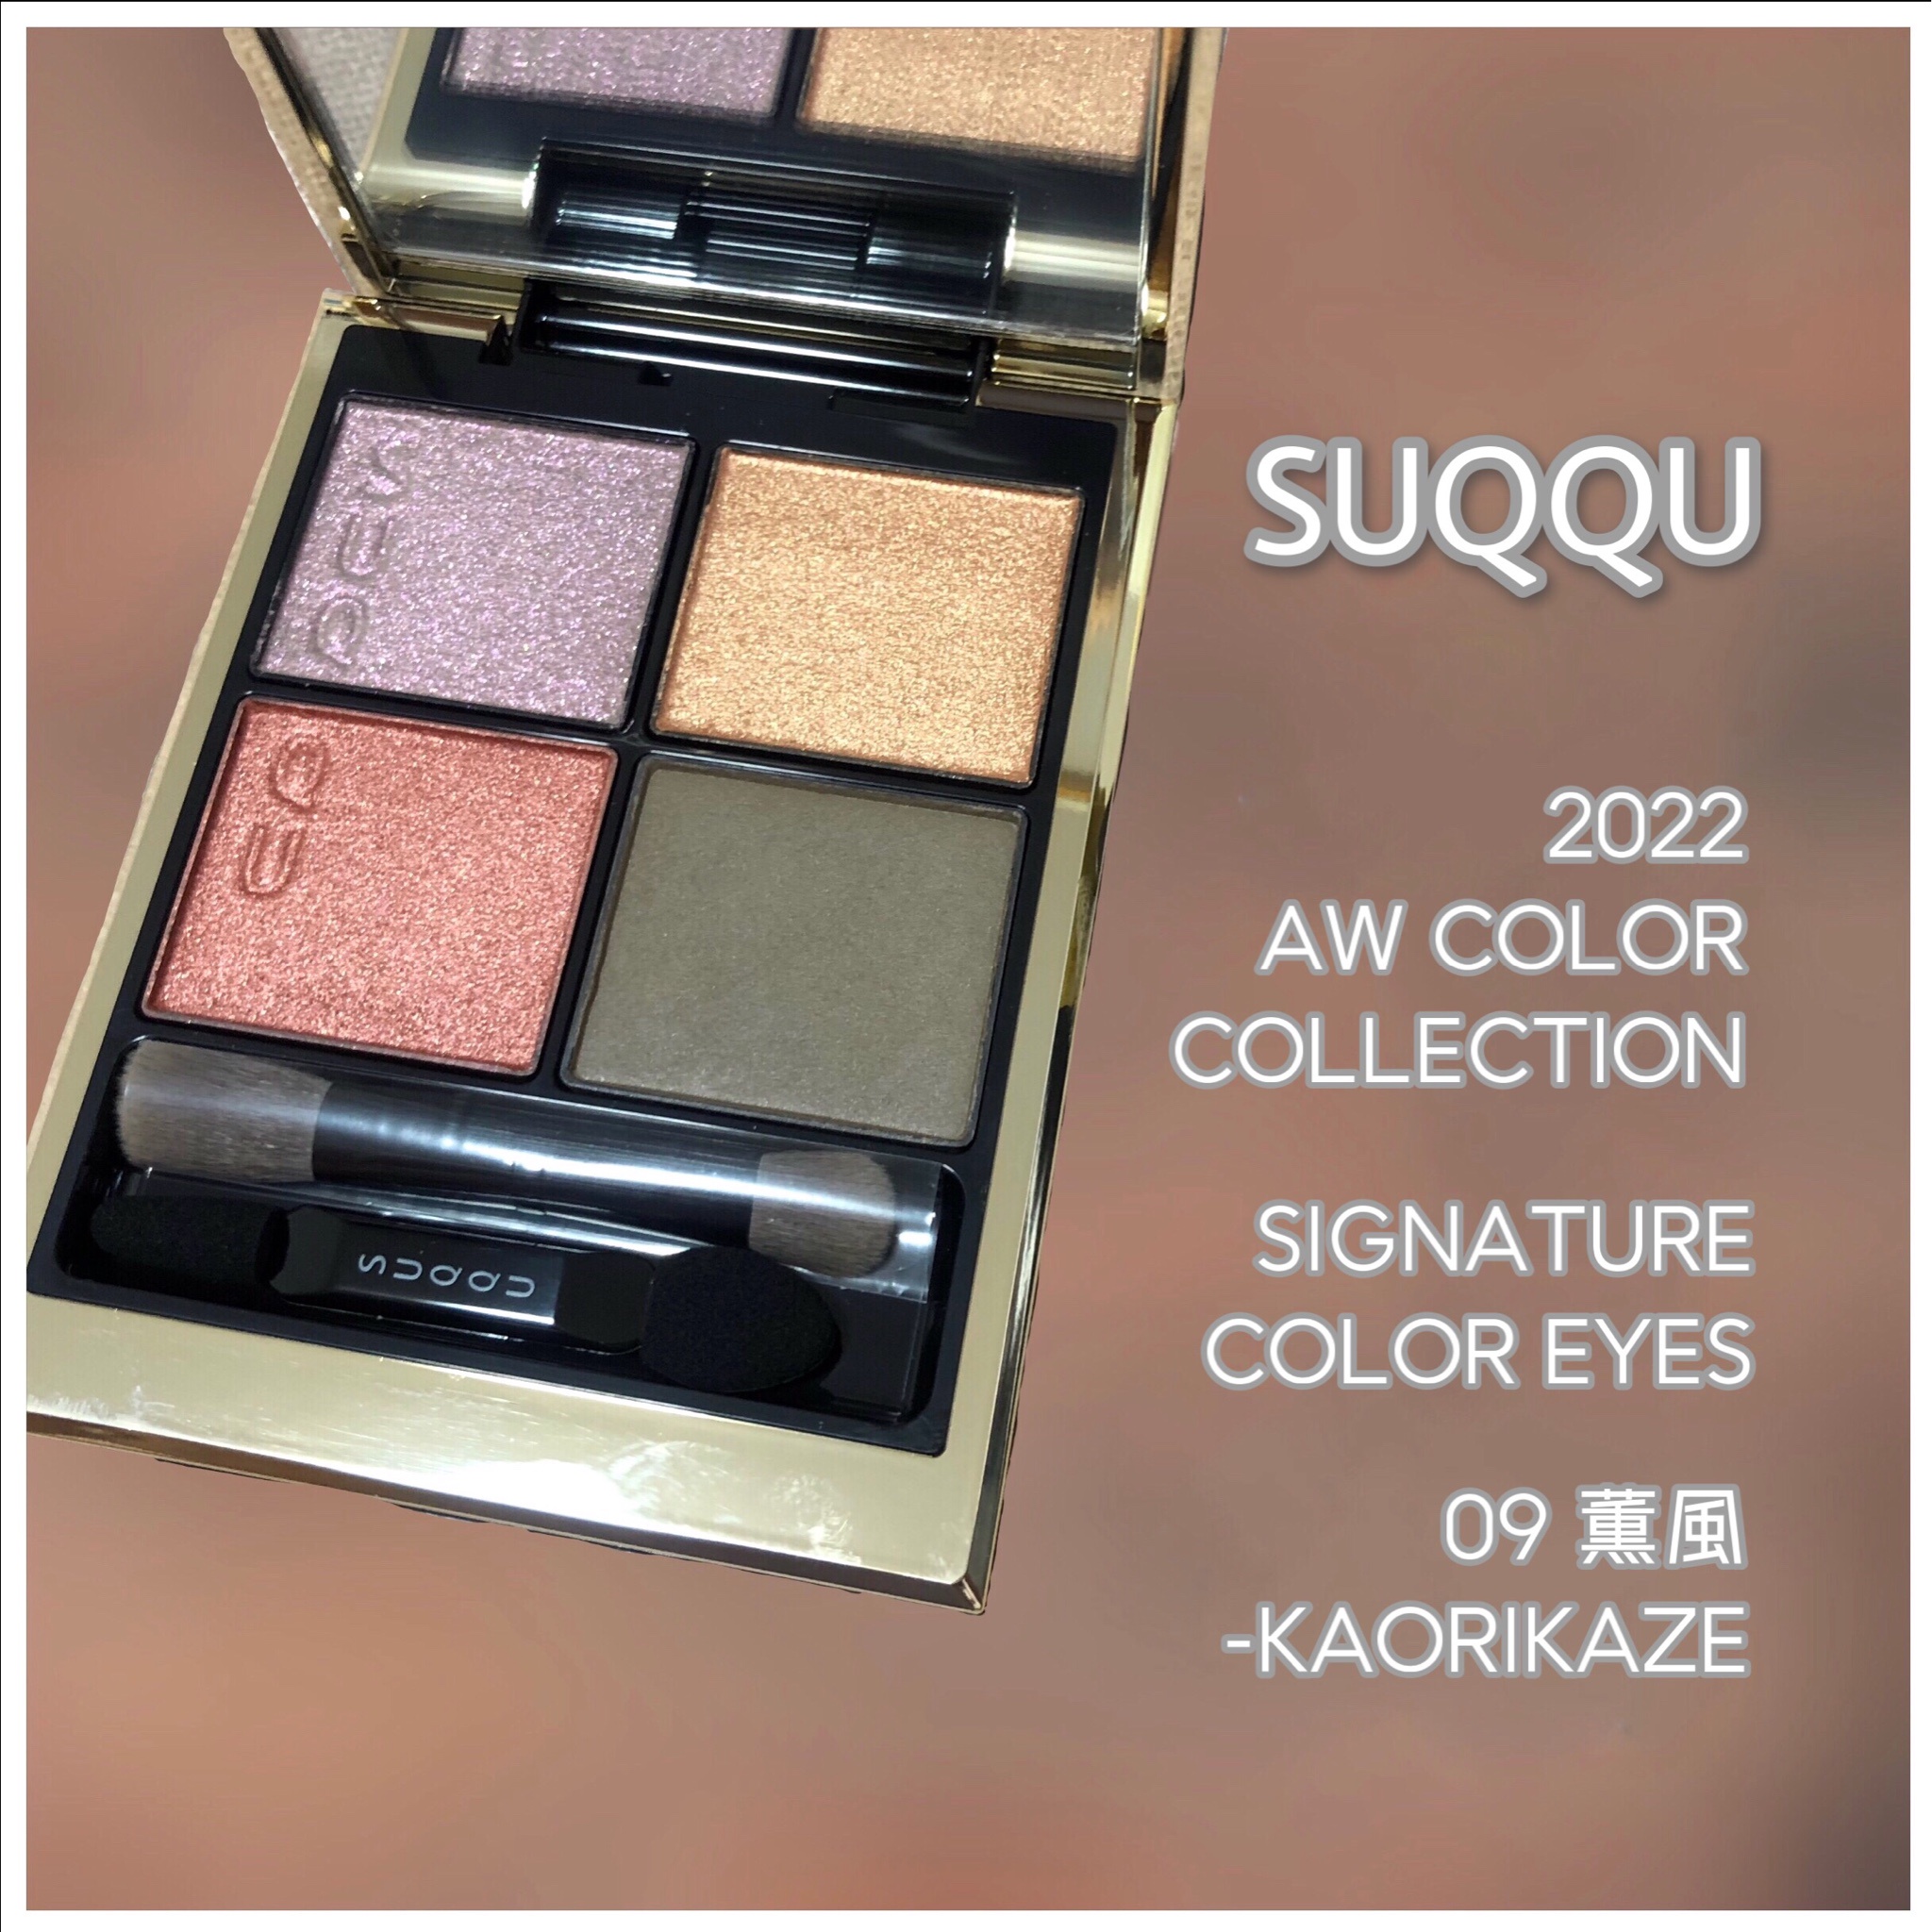 新商品!新型 SUQQU シグニチャー カラー アイズ 09 薫風 KAORIKAZE 